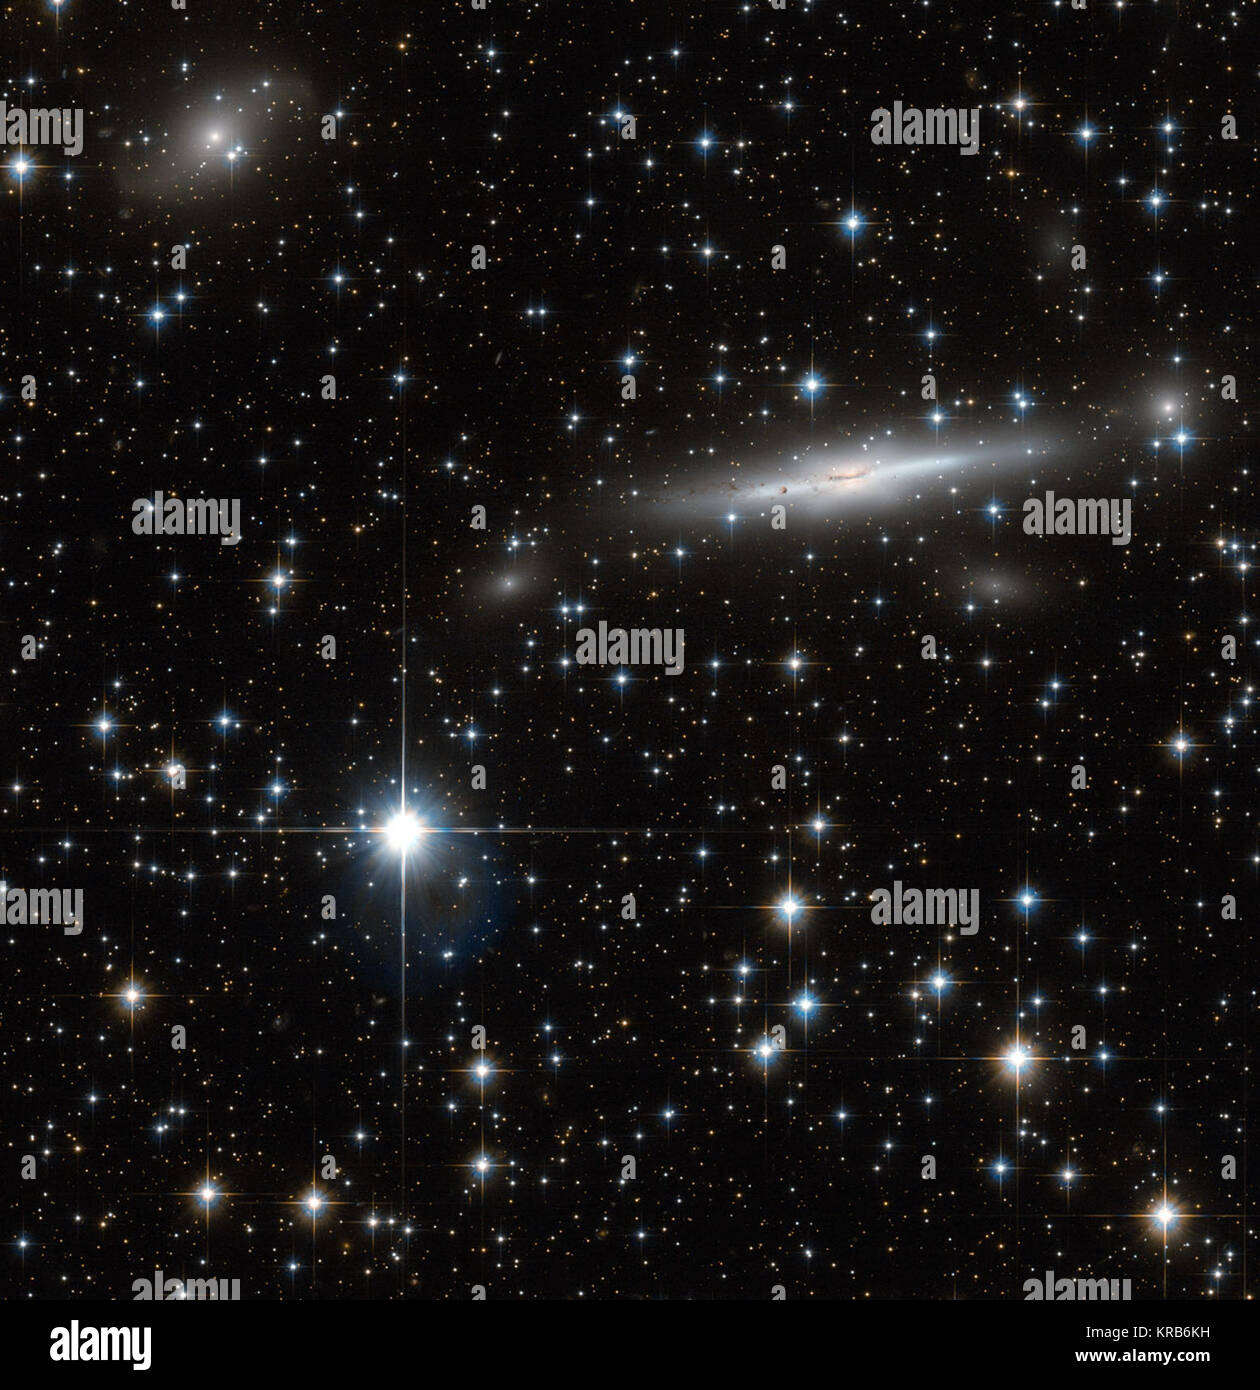 Ein Patch Platz hat in diesem Bild von der NASA/ESA Hubble Space Telescope eingefangen worden. Mit vielen nahe Sterne zerstreut, das Feld hat auch zahlreiche Galaxien im Hintergrund. An der Grenze von Triangulum Australe (der Südlichen Dreieck) und Norma (Schreinerei), Befindet sich in diesem Feld deckt einen Teil des Norma Cluster (Abell 3627) sowie einem dichten Bereich unserer eigenen Galaxie, der Milchstraße. Die Norma Cluster ist die nächste massive Galaxienhaufen auf die Milchstraße und liegt etwa 220 Millionen Lichtjahre entfernt. Die enorme Masse konzentriert, und die sich daraus ergebende Gravitatio Stockfoto